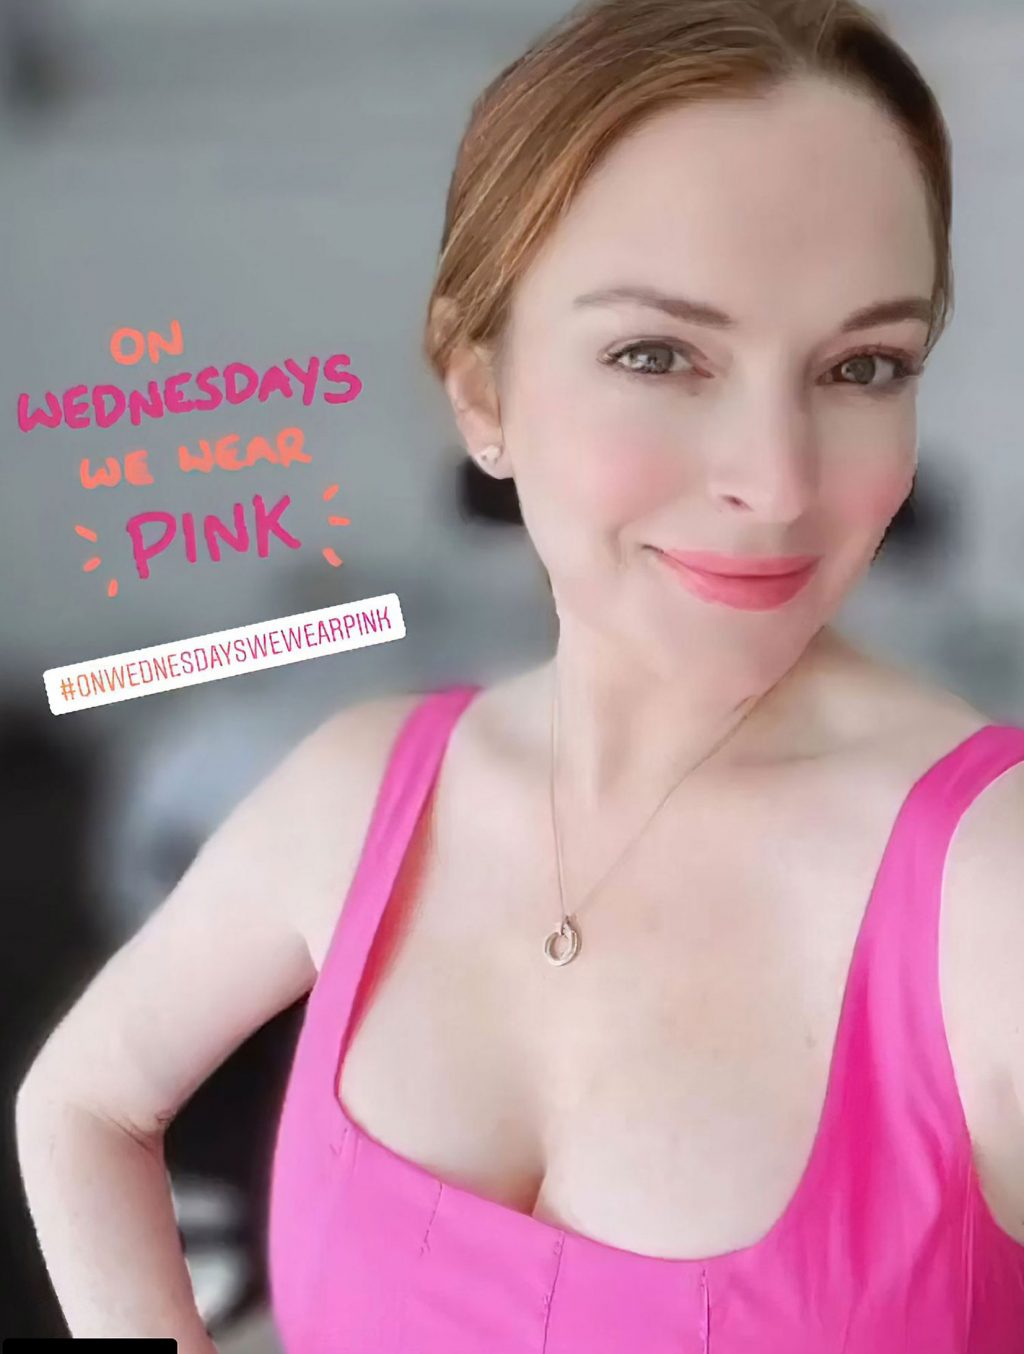 Lindsay Lohan nude sextape bikini feet ass tits pussy redhead new bikini ScandalPost 3 1024x1354 optimized